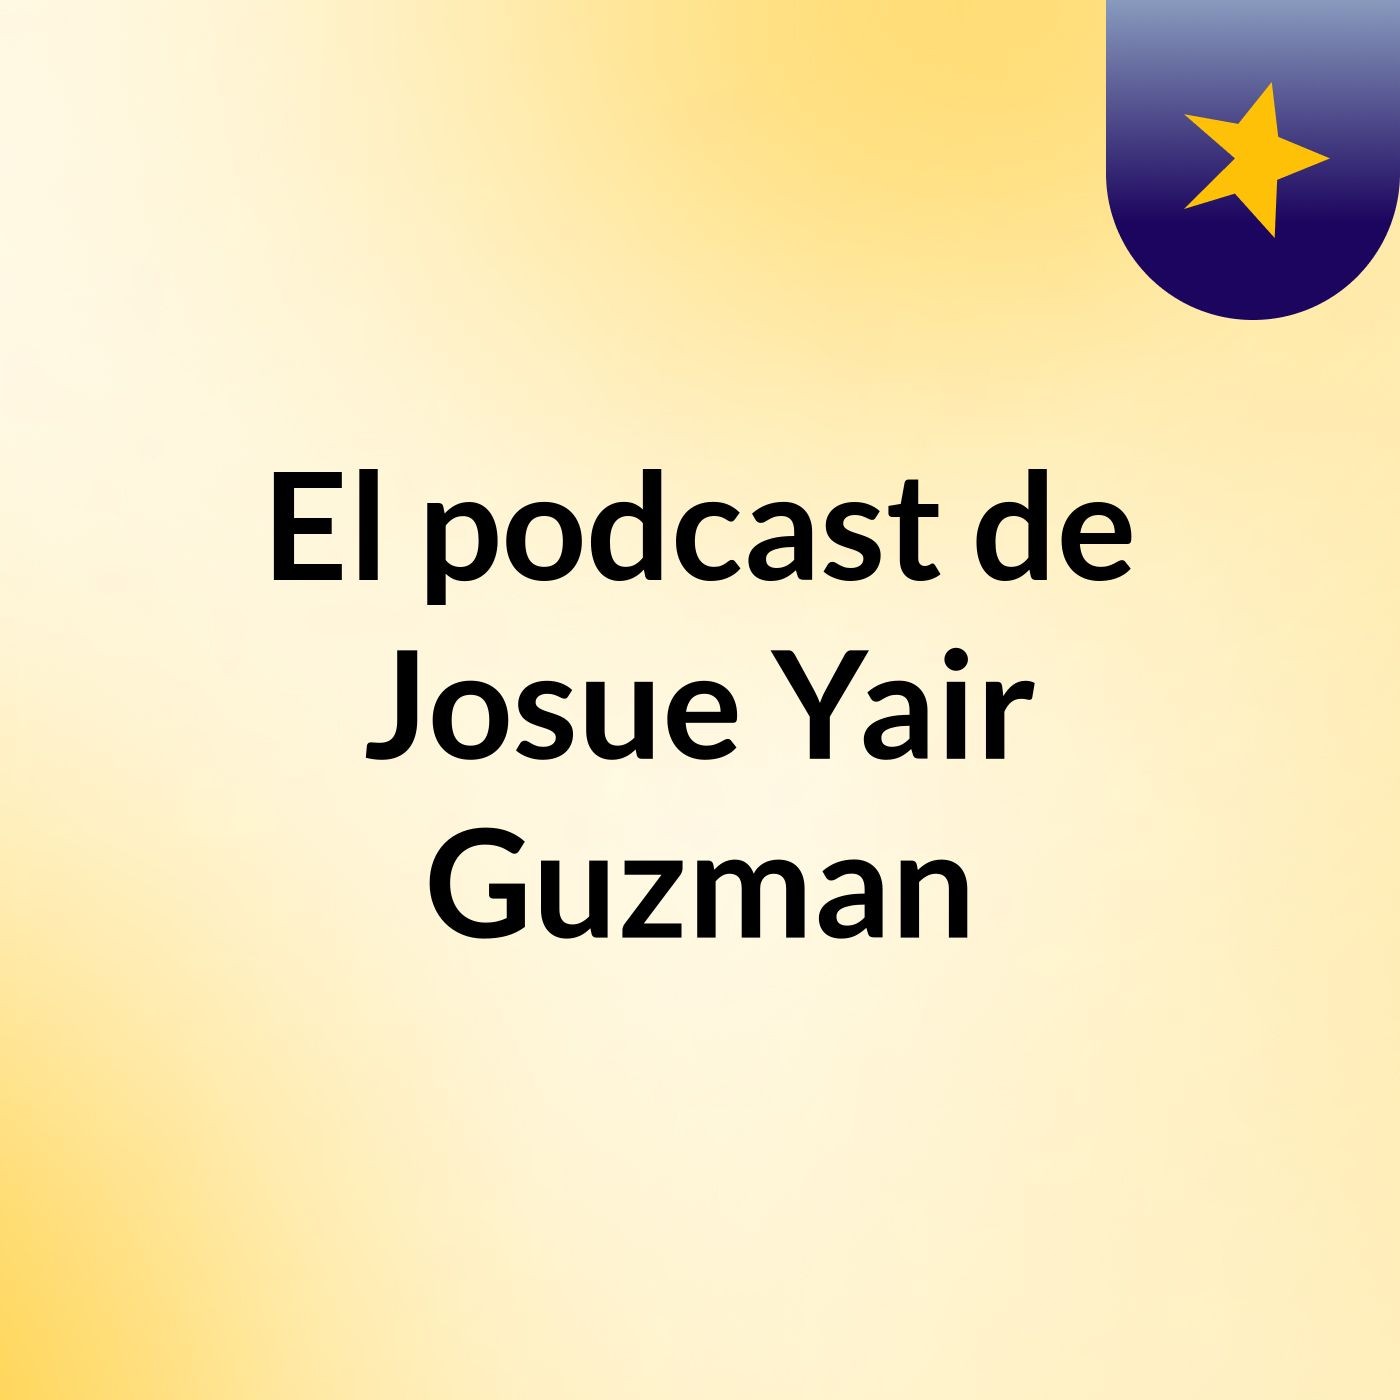 El podcast de Josue Yair Guzman